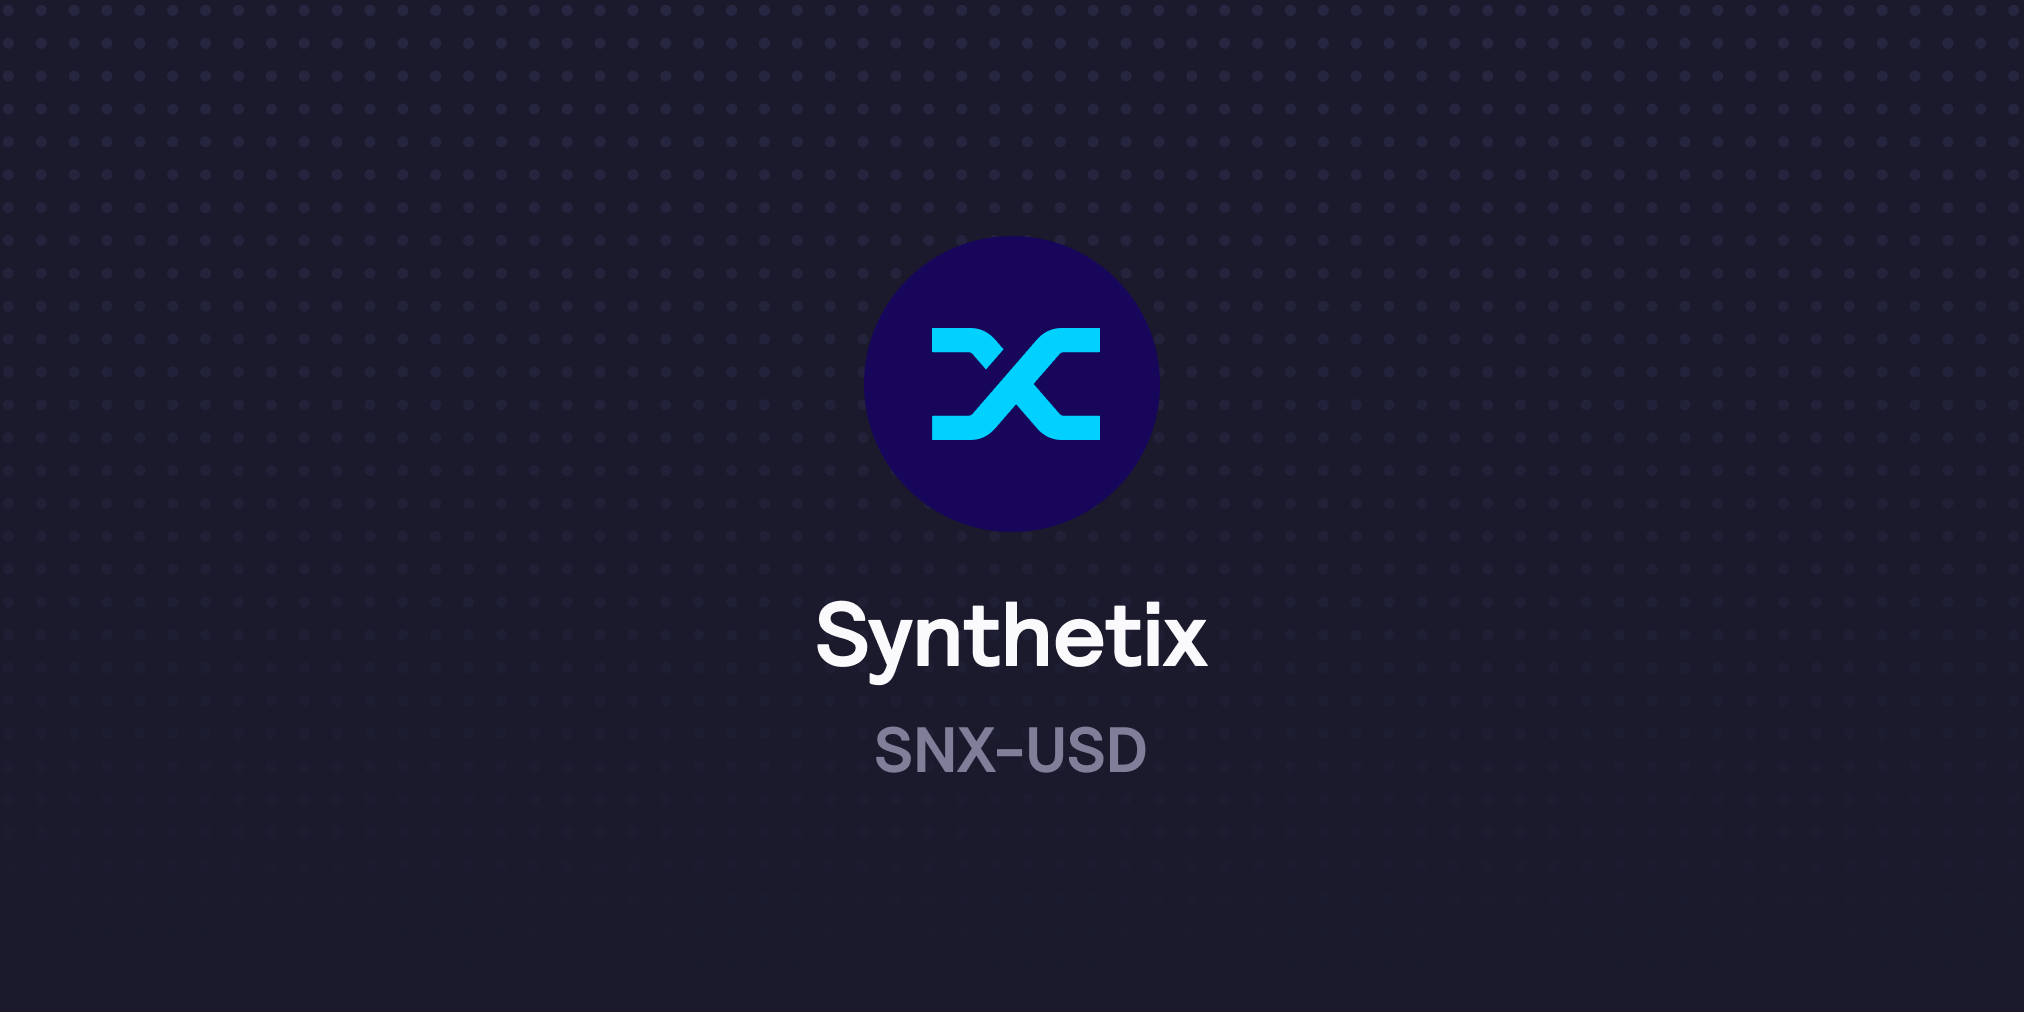 SNX now live